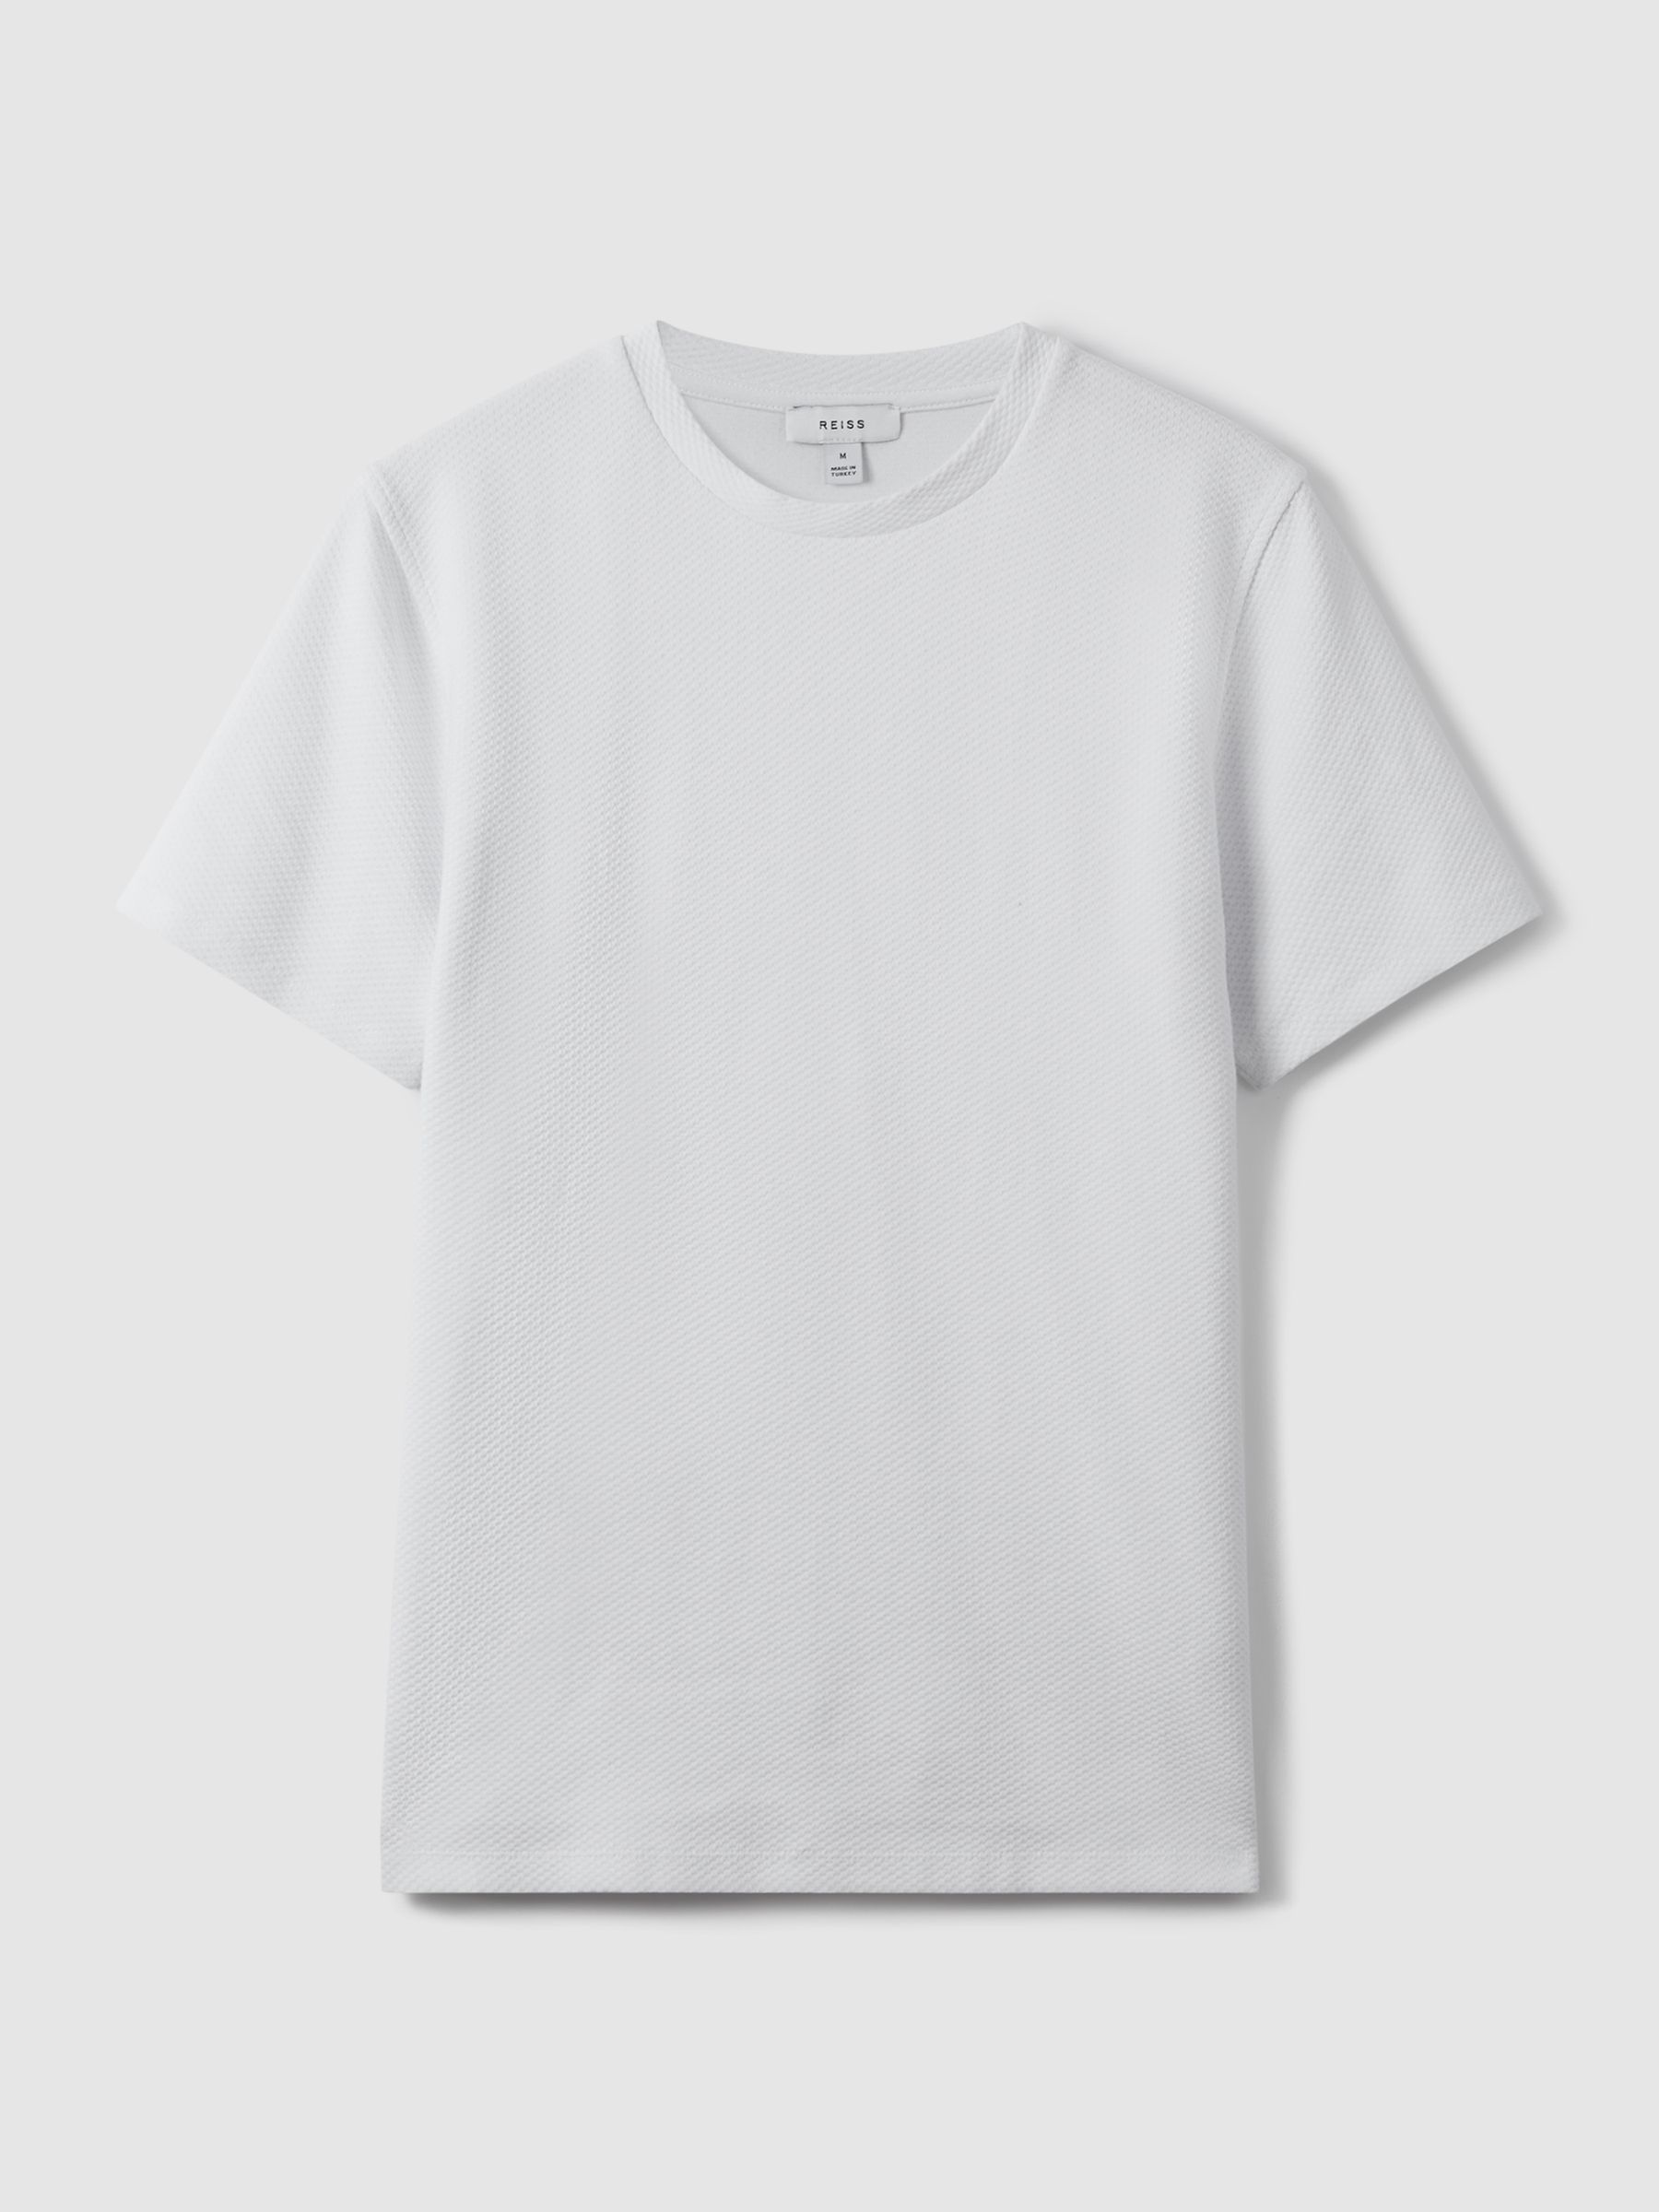 Reiss Cooper Honeycomb Short Sleeve T-Shirt - REISS